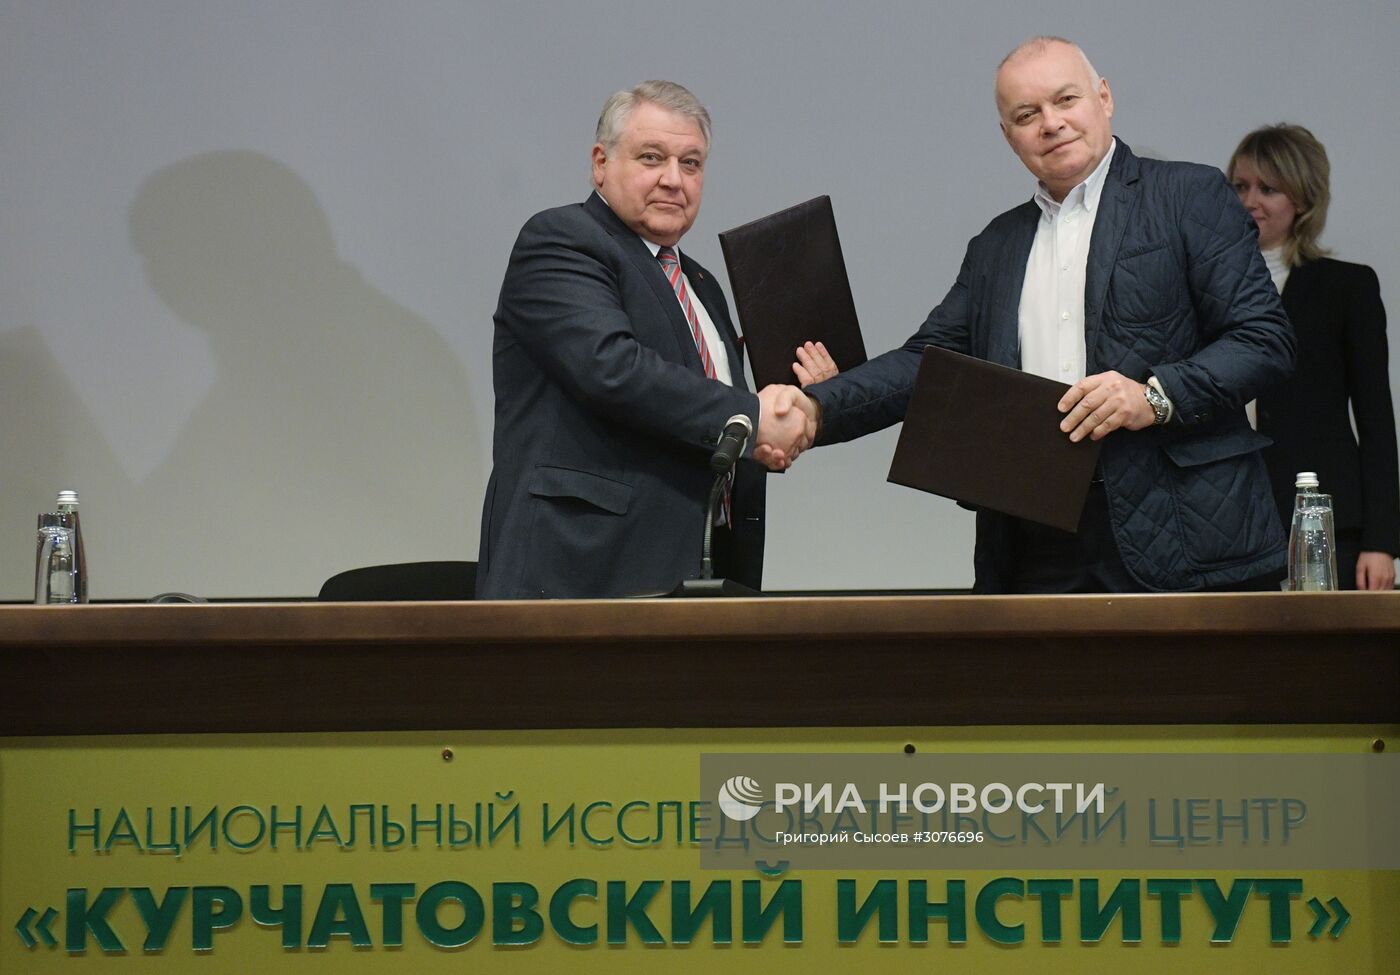 Подписание соглашения между МИА "Россия сегодня" и НИЦ "Курчатовский институт"